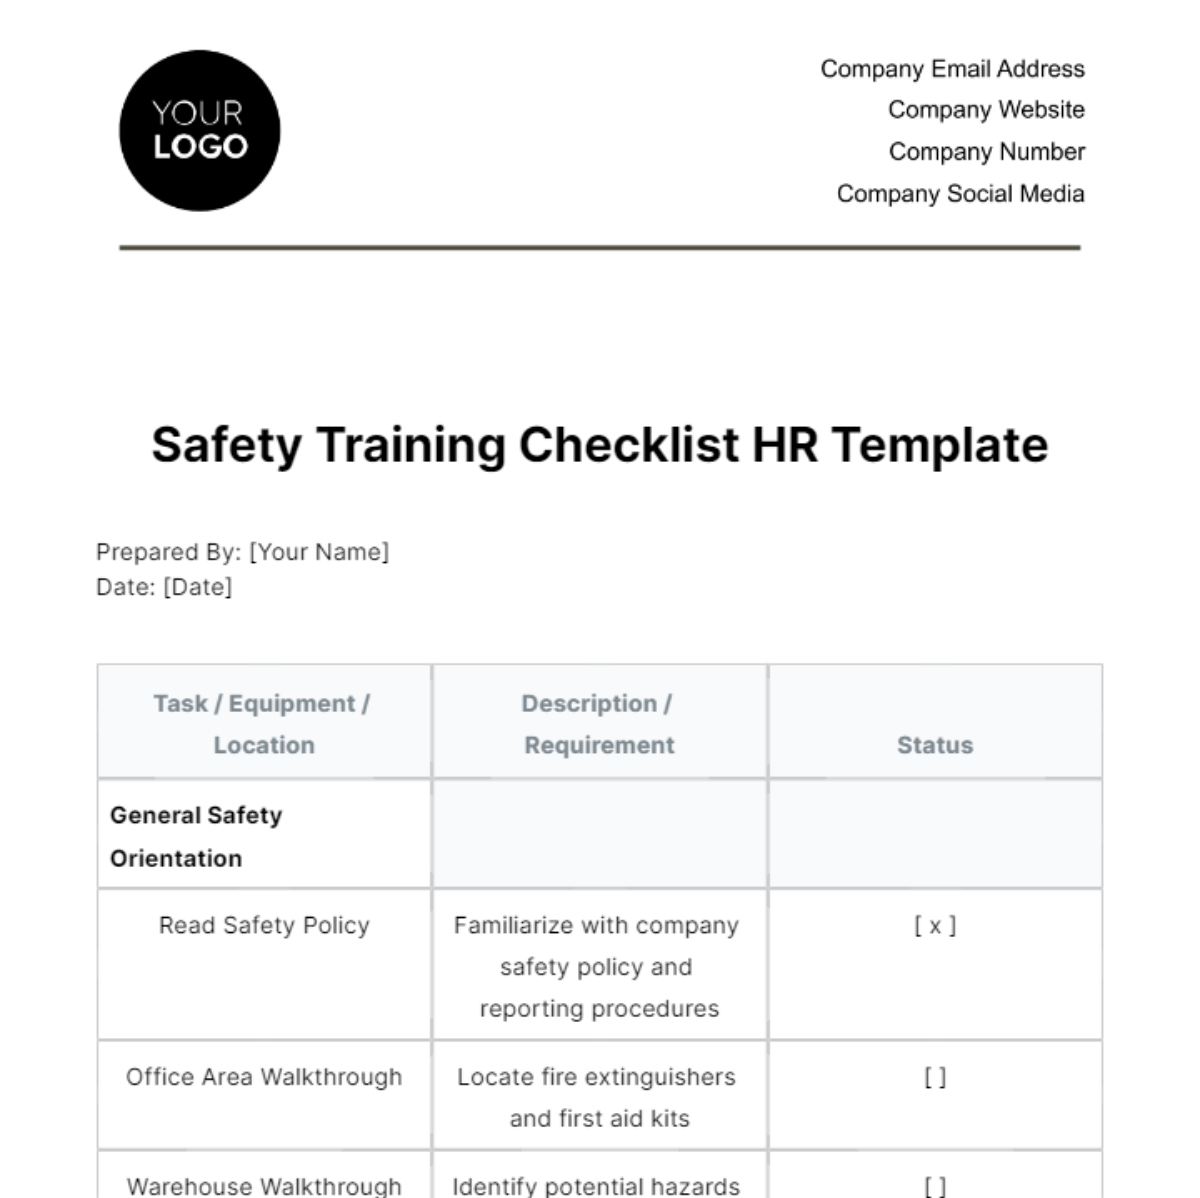 Free Safety Training Checklist HR Template